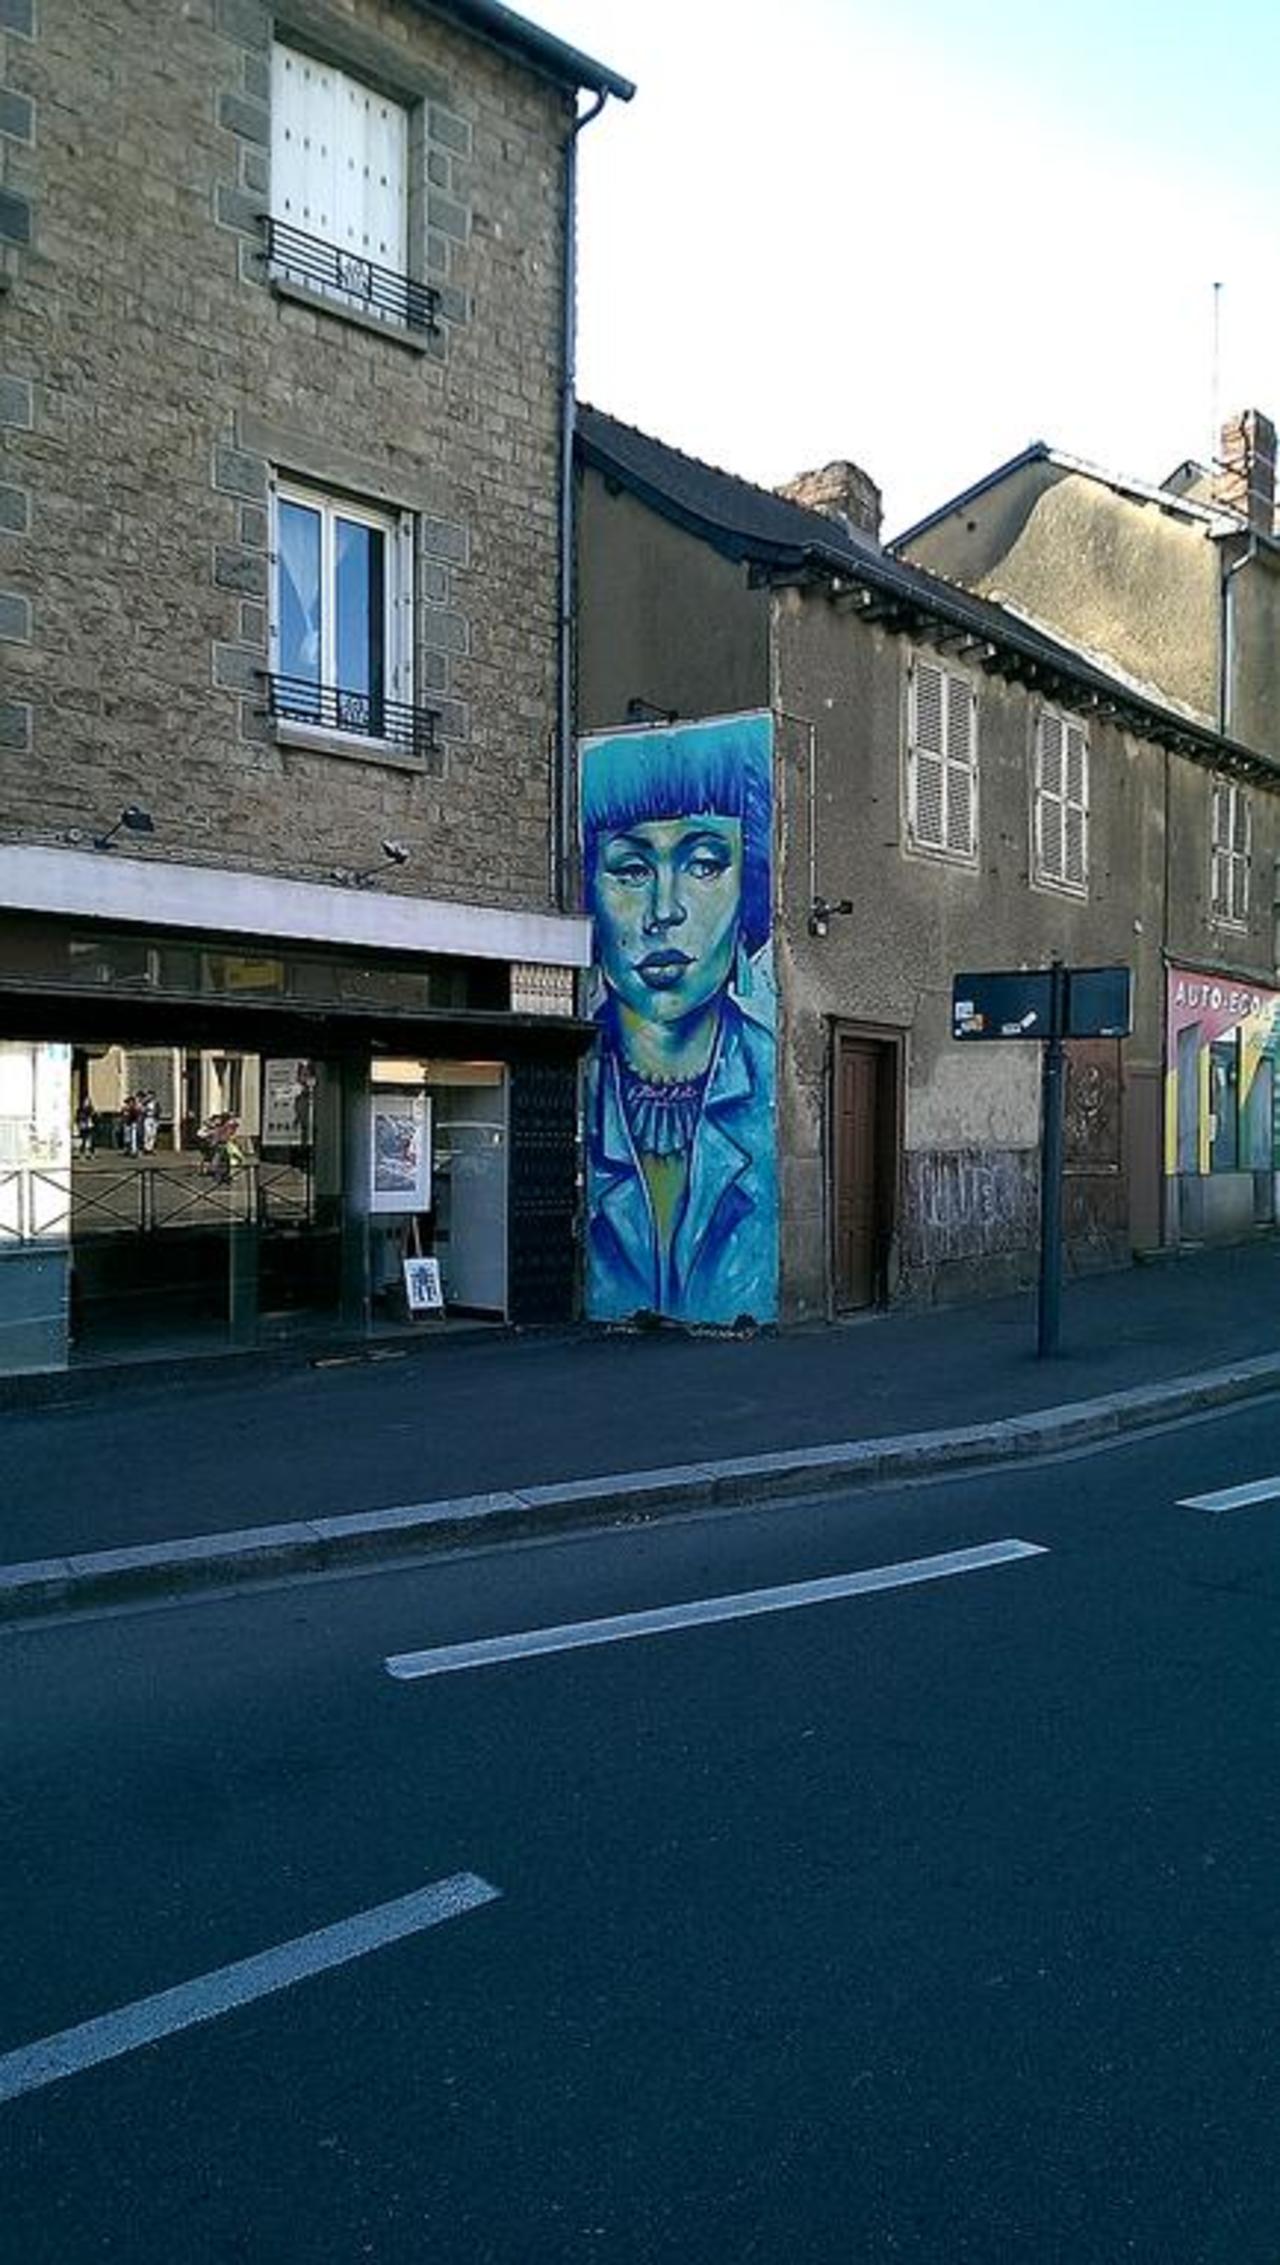 Street Art by anonymous in #Rennes http://www.urbacolors.com #art #mural #graffiti #streetart http://t.co/KKjSN7ncHz